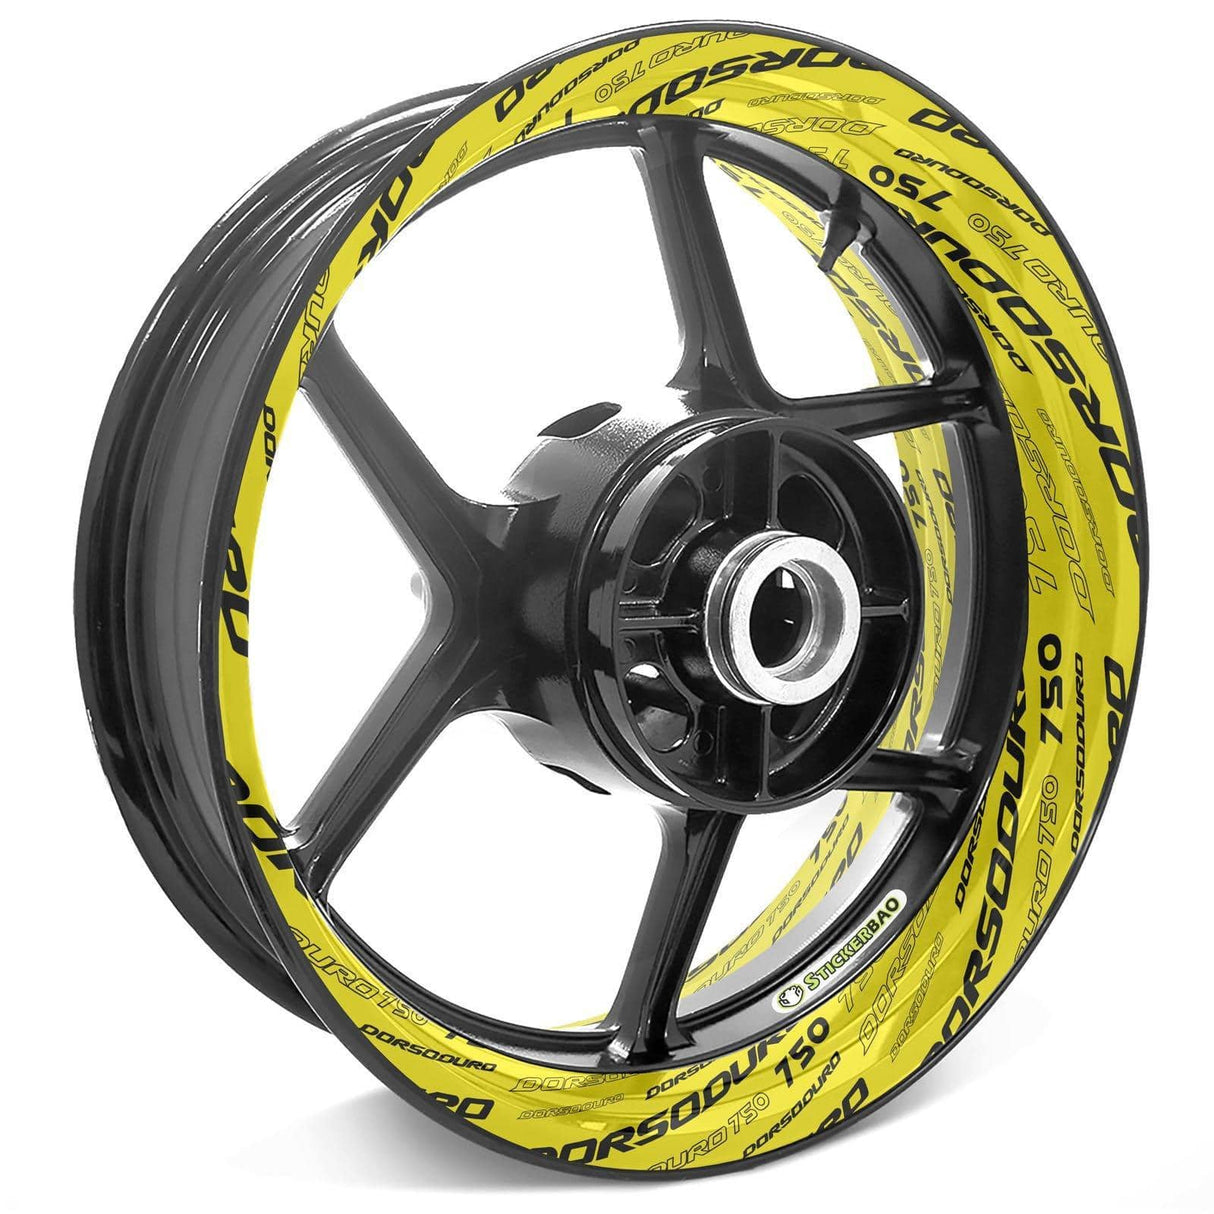 For Aprilia Dorsoduro 750 Logo SMV750 17 inch Rim Wheel Stickers TA001 Whole Rim Decal.